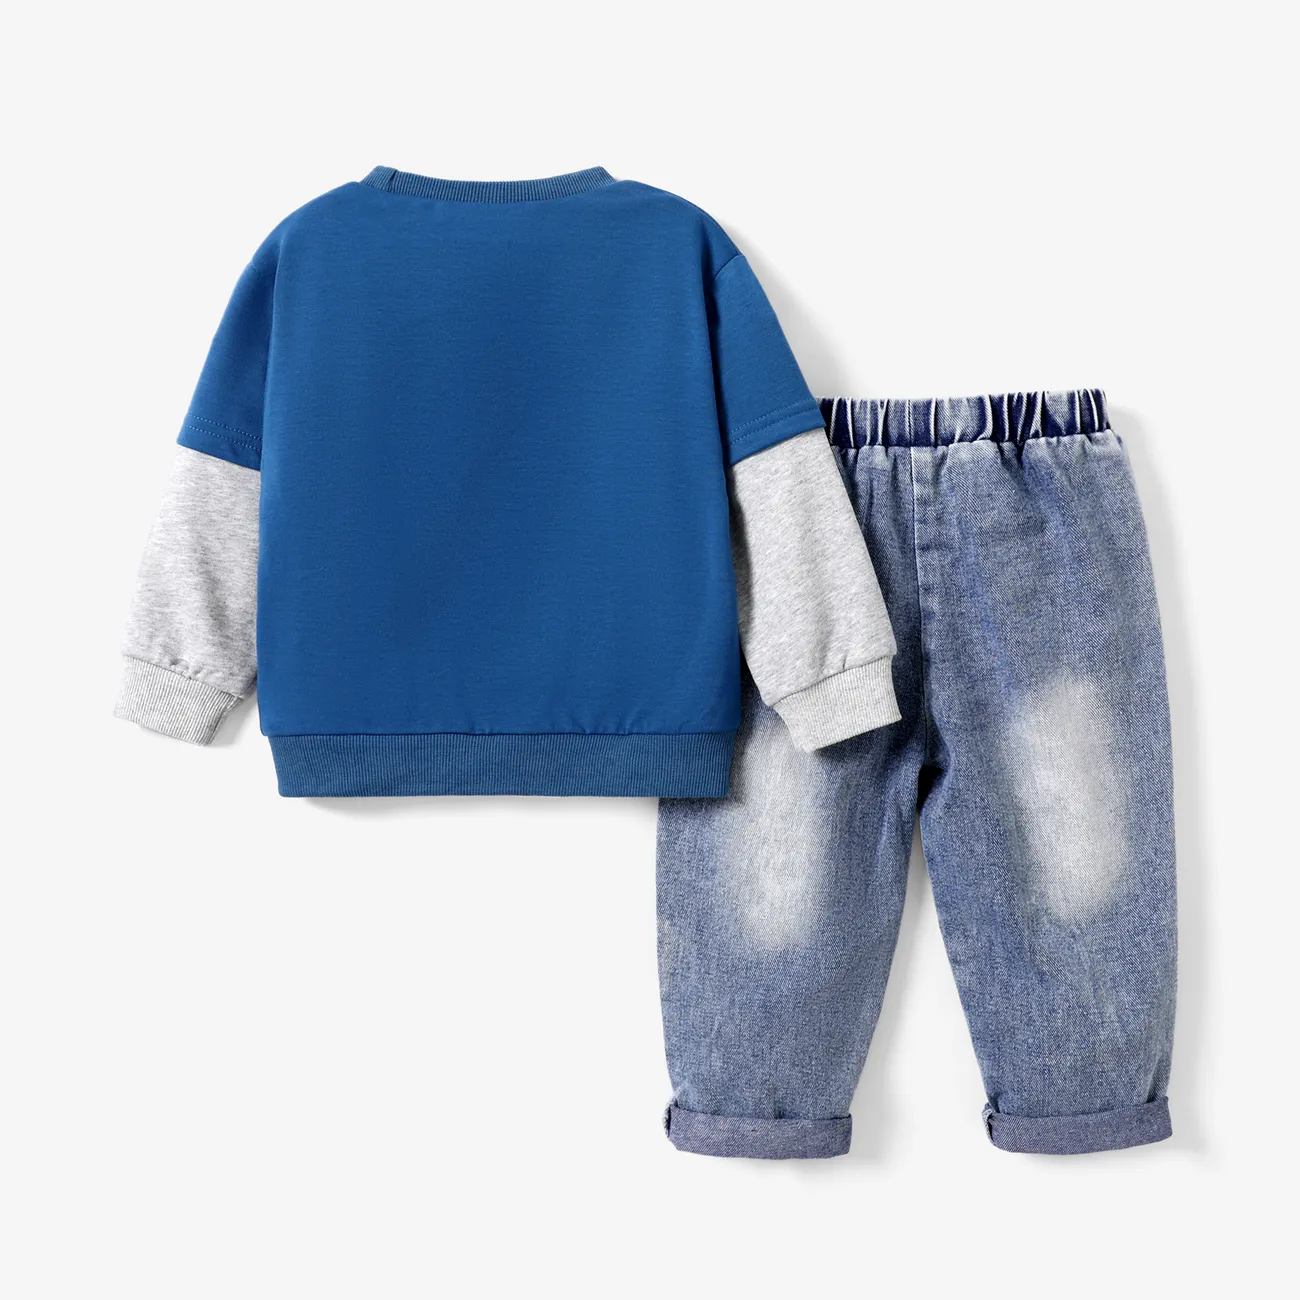 2 Stück Kleinkinder Jungen Löcher Avantgardistisch Dinosaurier Sweatshirt-Sets blau big image 1